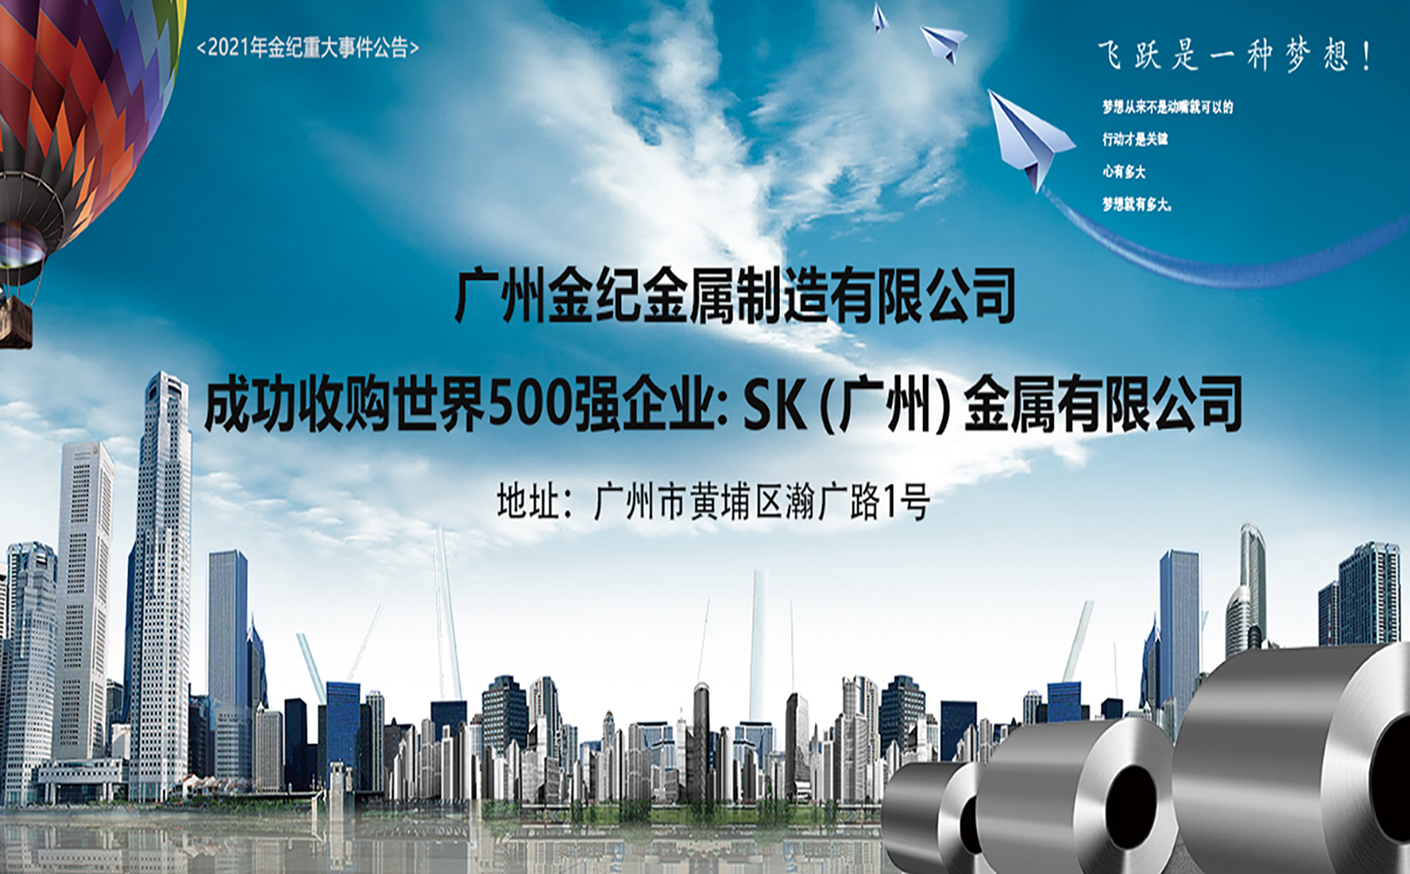 广州金纪金属制造有限公司 成功收购世界500强企业:SK(广州)金属有限公司